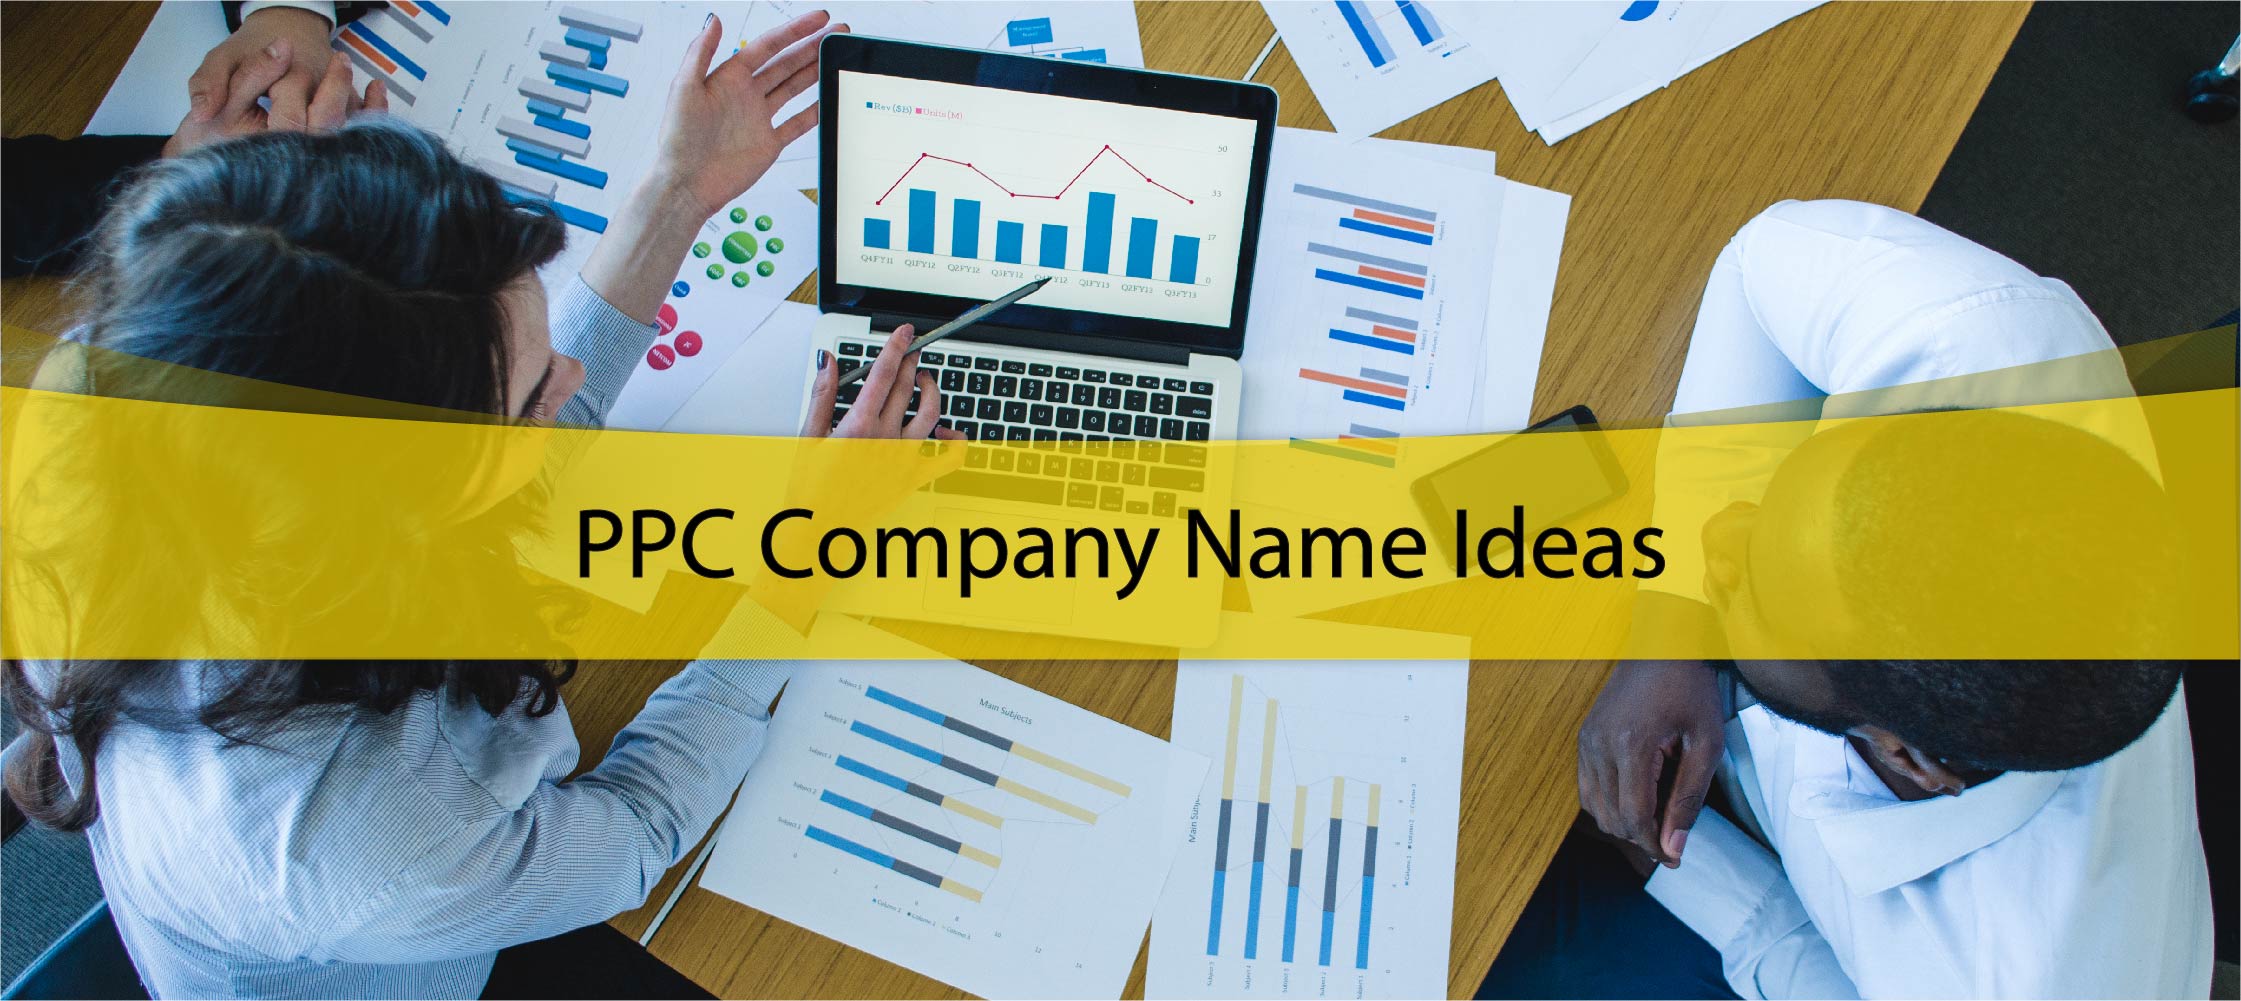 PPC Company Name Ideas